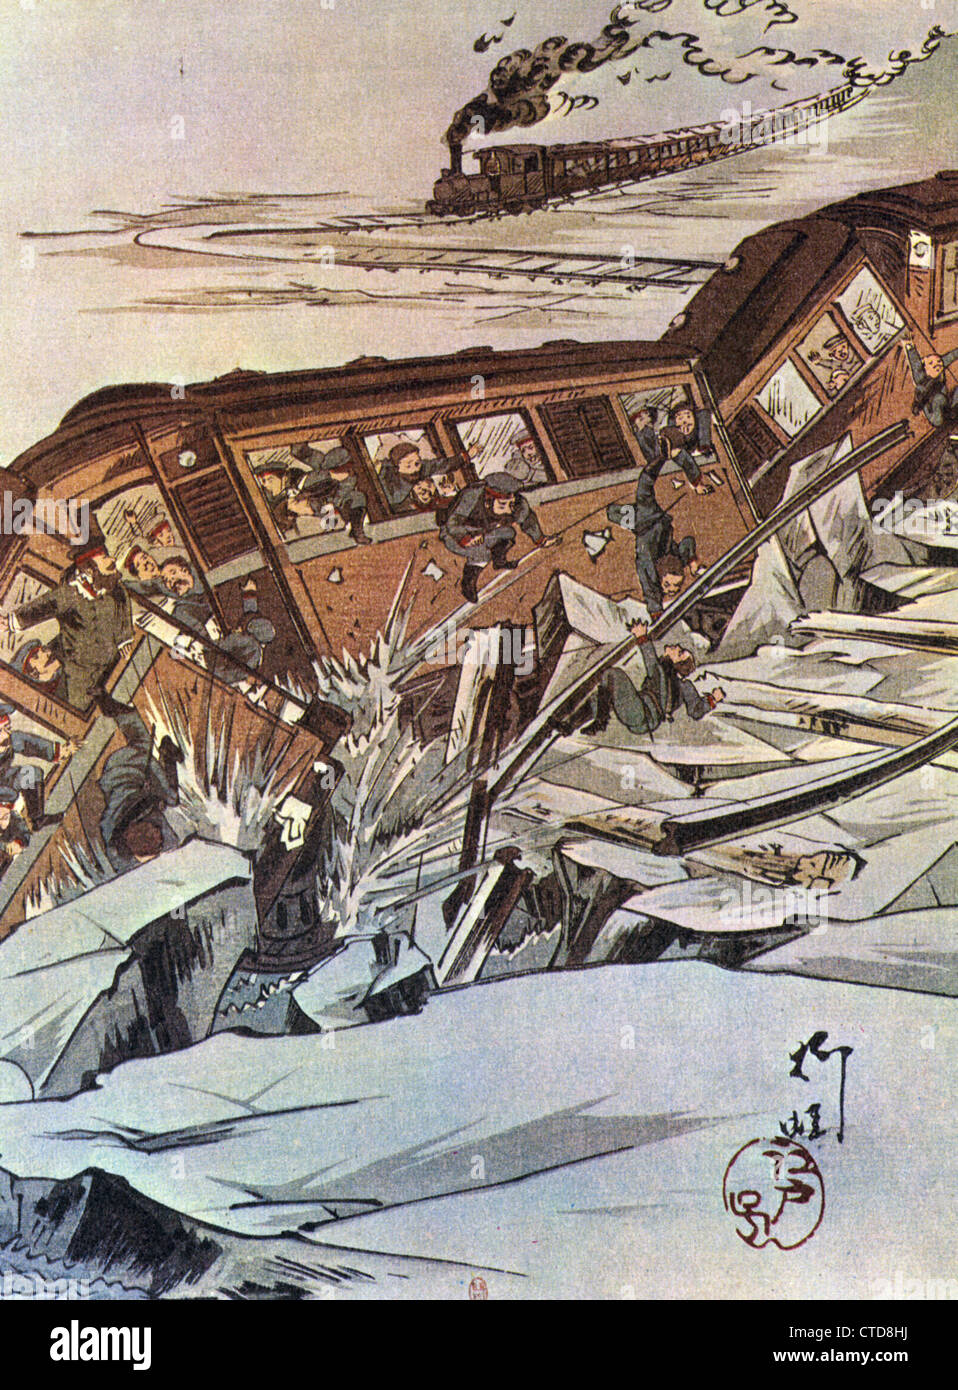 La guerre russo-japonaise 1905-05. Impression japonaise montrant un train soit des troupes russes de-rails Banque D'Images